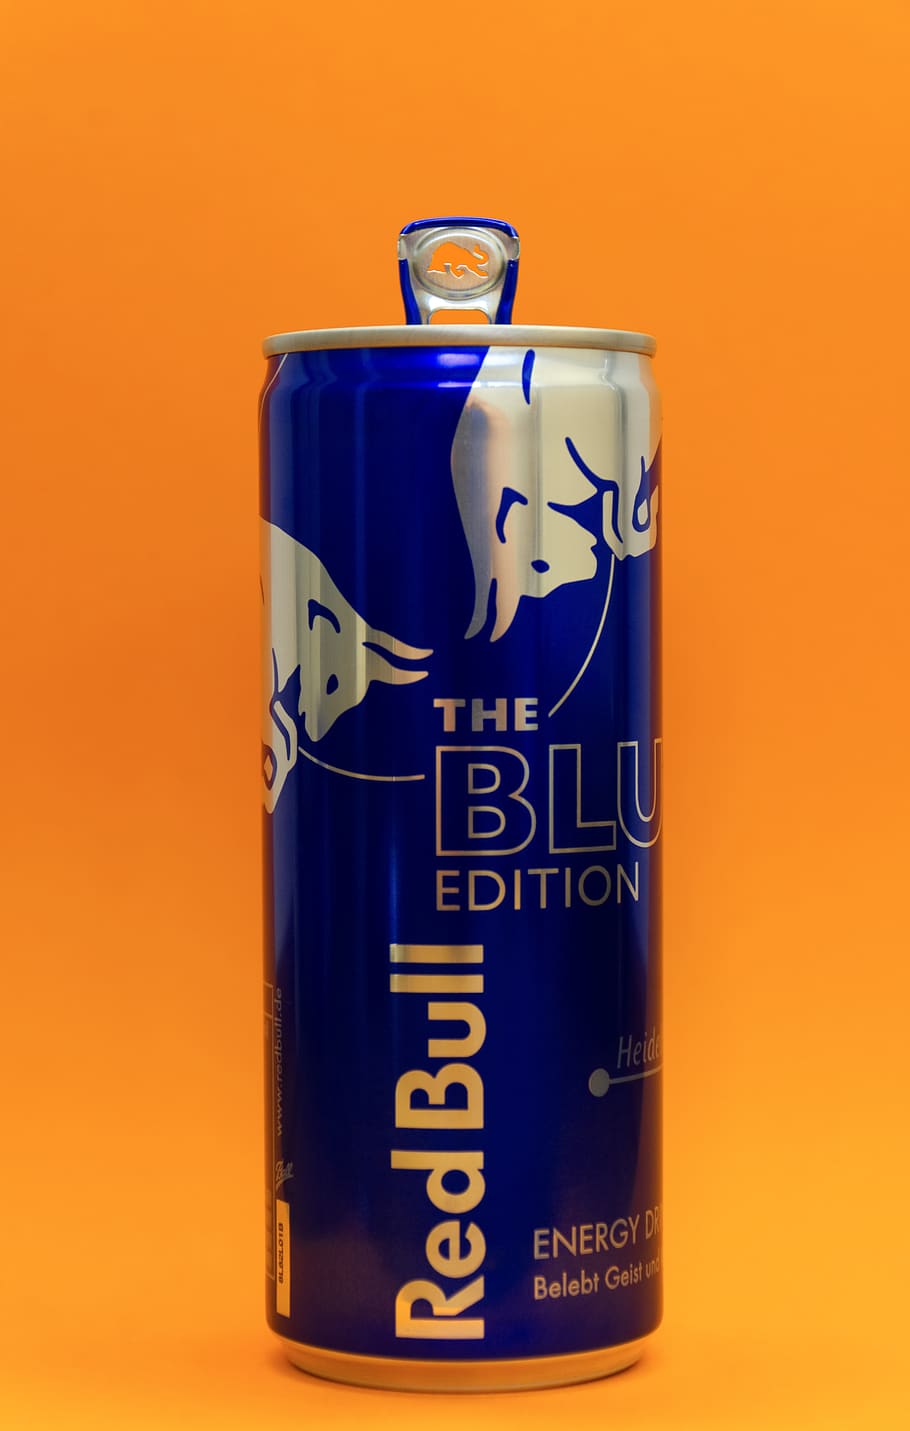 Hd Wallpaper Energy Drink Can Blue Redbull Energydrink Softdrink Studio Shot Wallpaper Flare